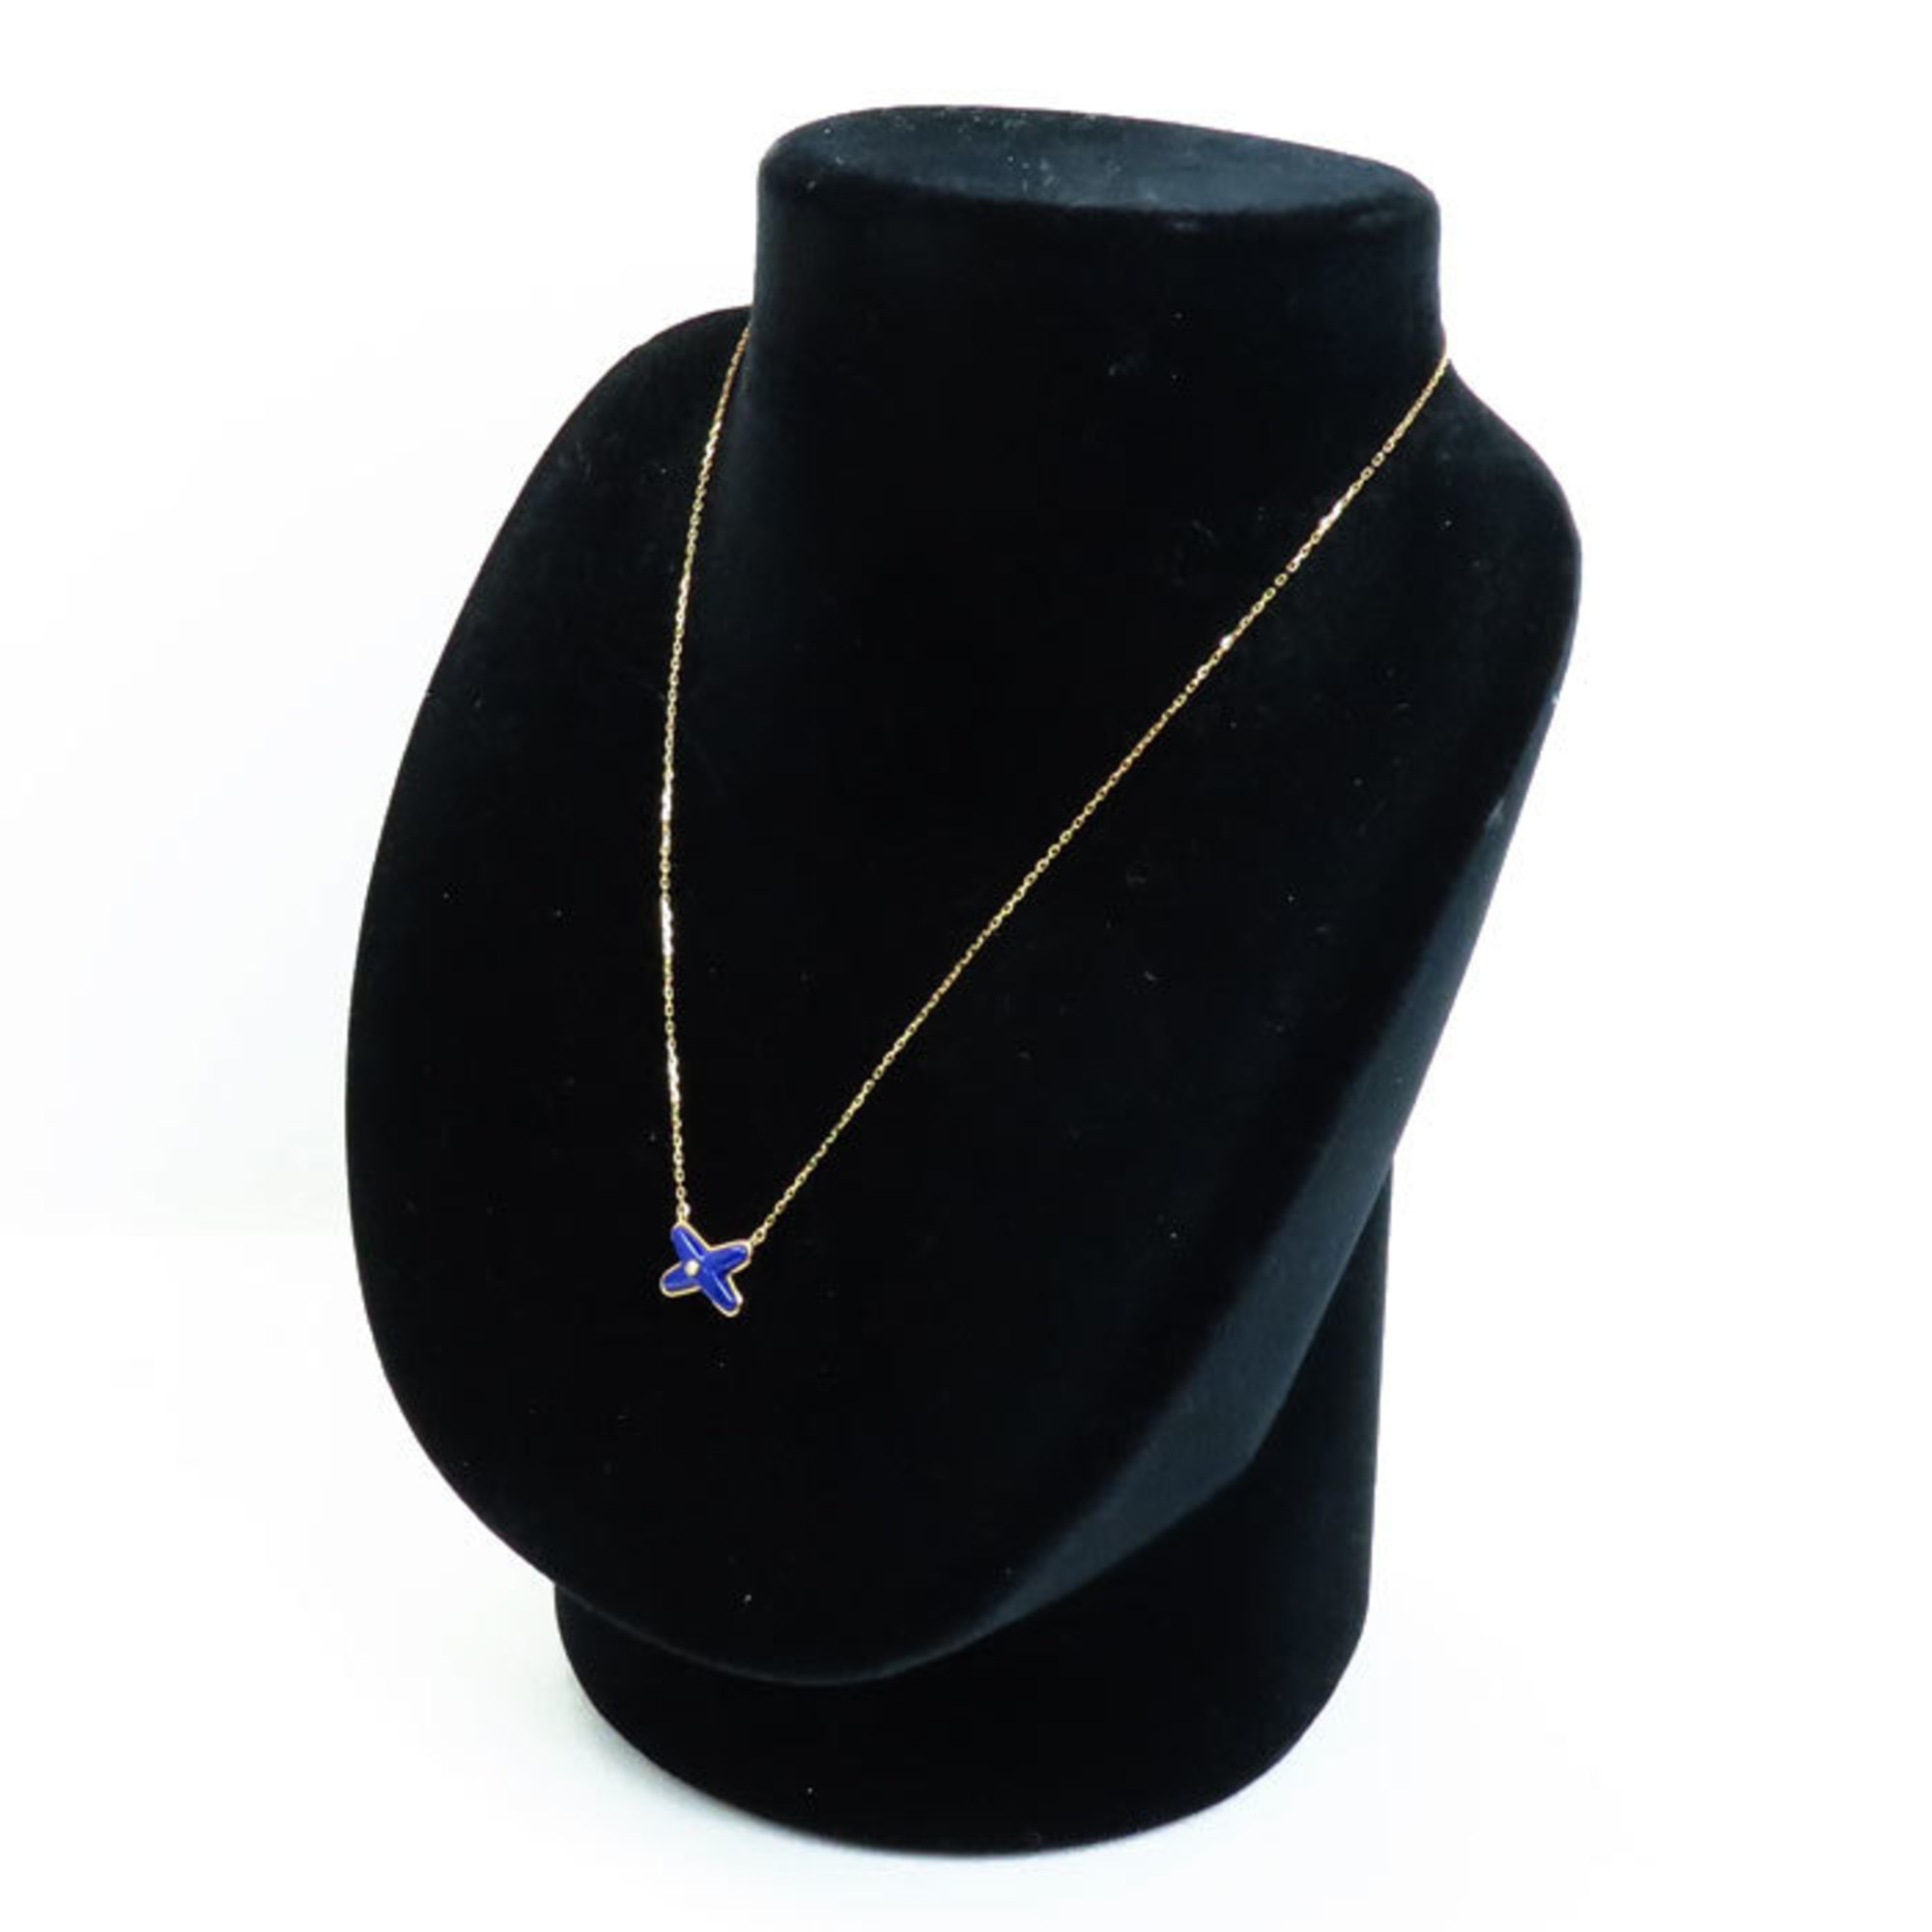 Chaumet K18PG Pink Gold Jeux de Liens Lapis Lazuli Necklace Diamond 3.0g 42-40-38cm Women's